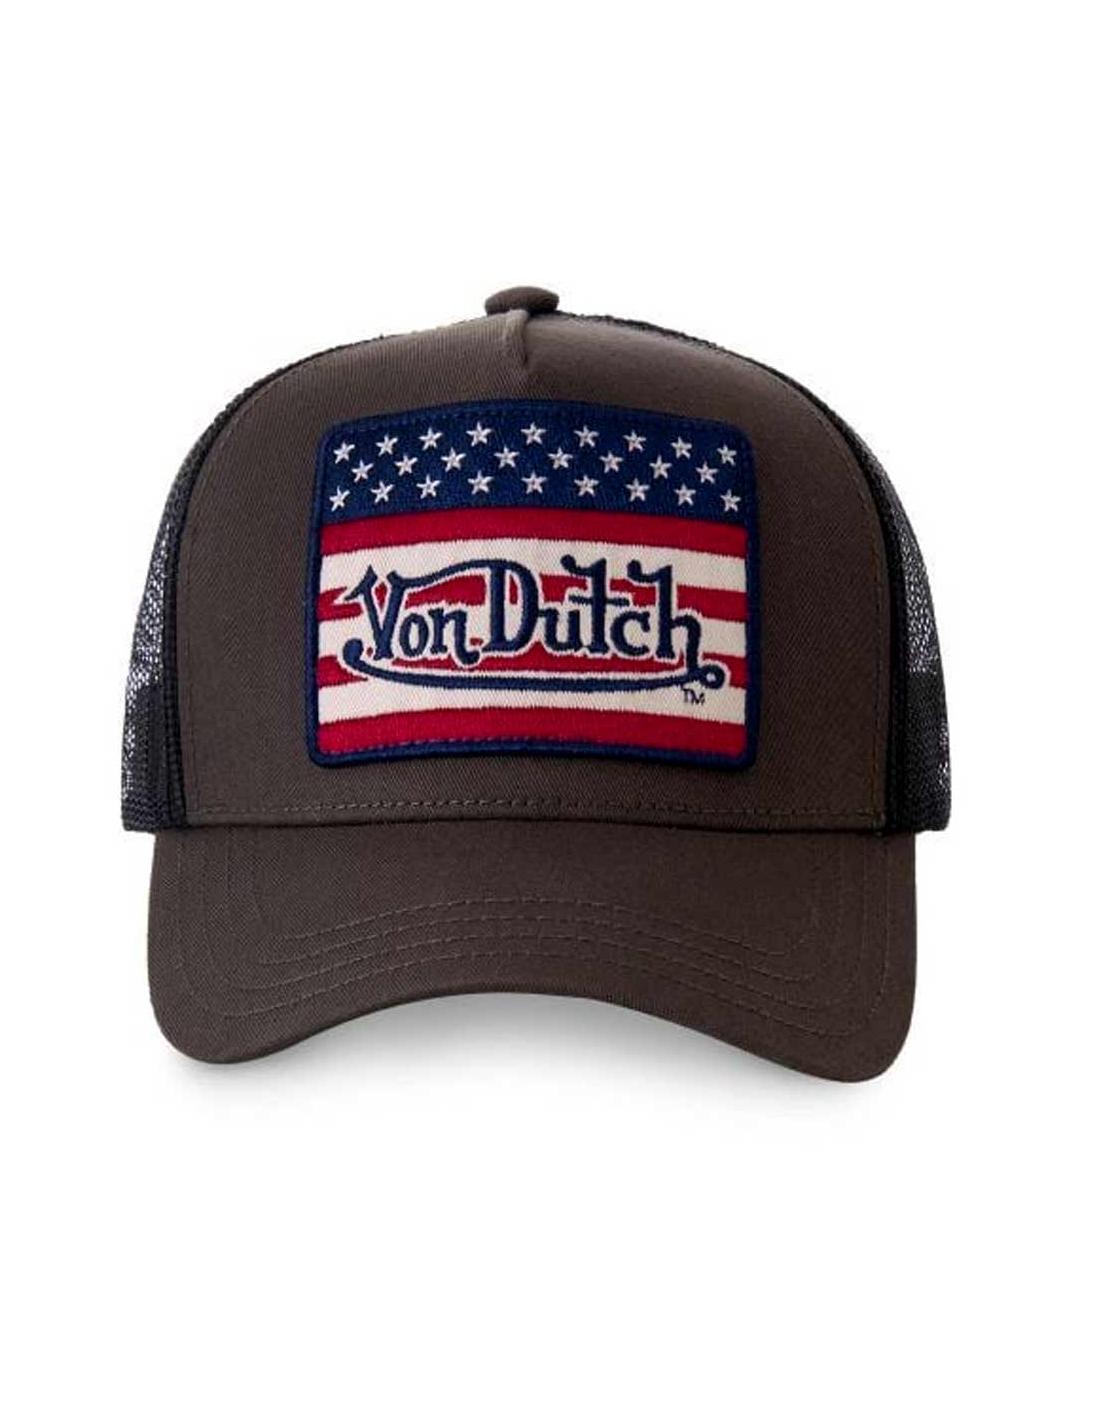 VON DUTCH FLA KAK USA FLAG CAP